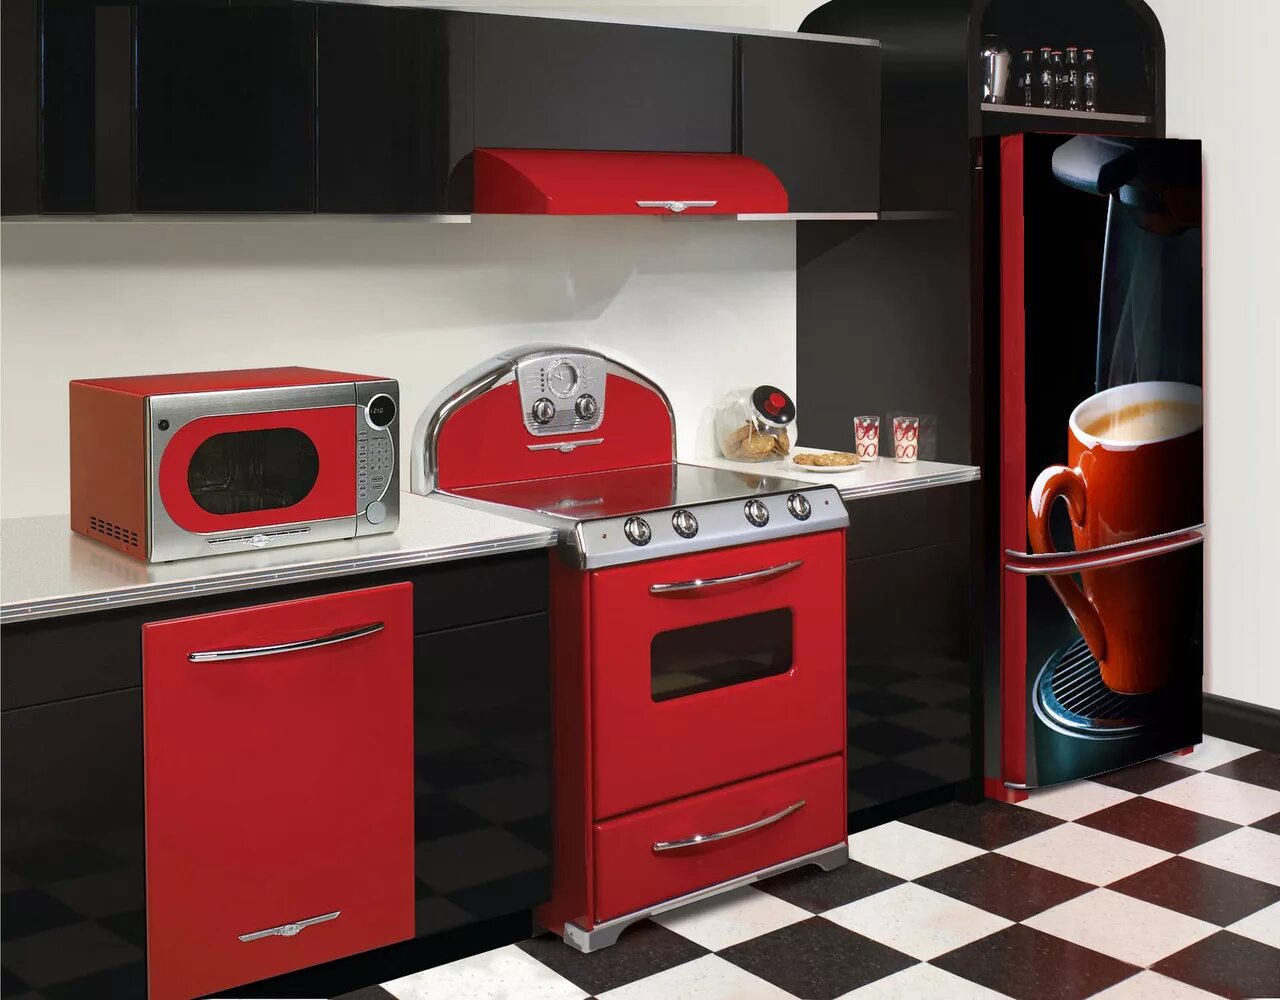 Бытовая техника. Кухня с бытовой техникой. Бытовая техника в интерьере. Кухня с красным холодильником. Красная бытовая техника для кухни.